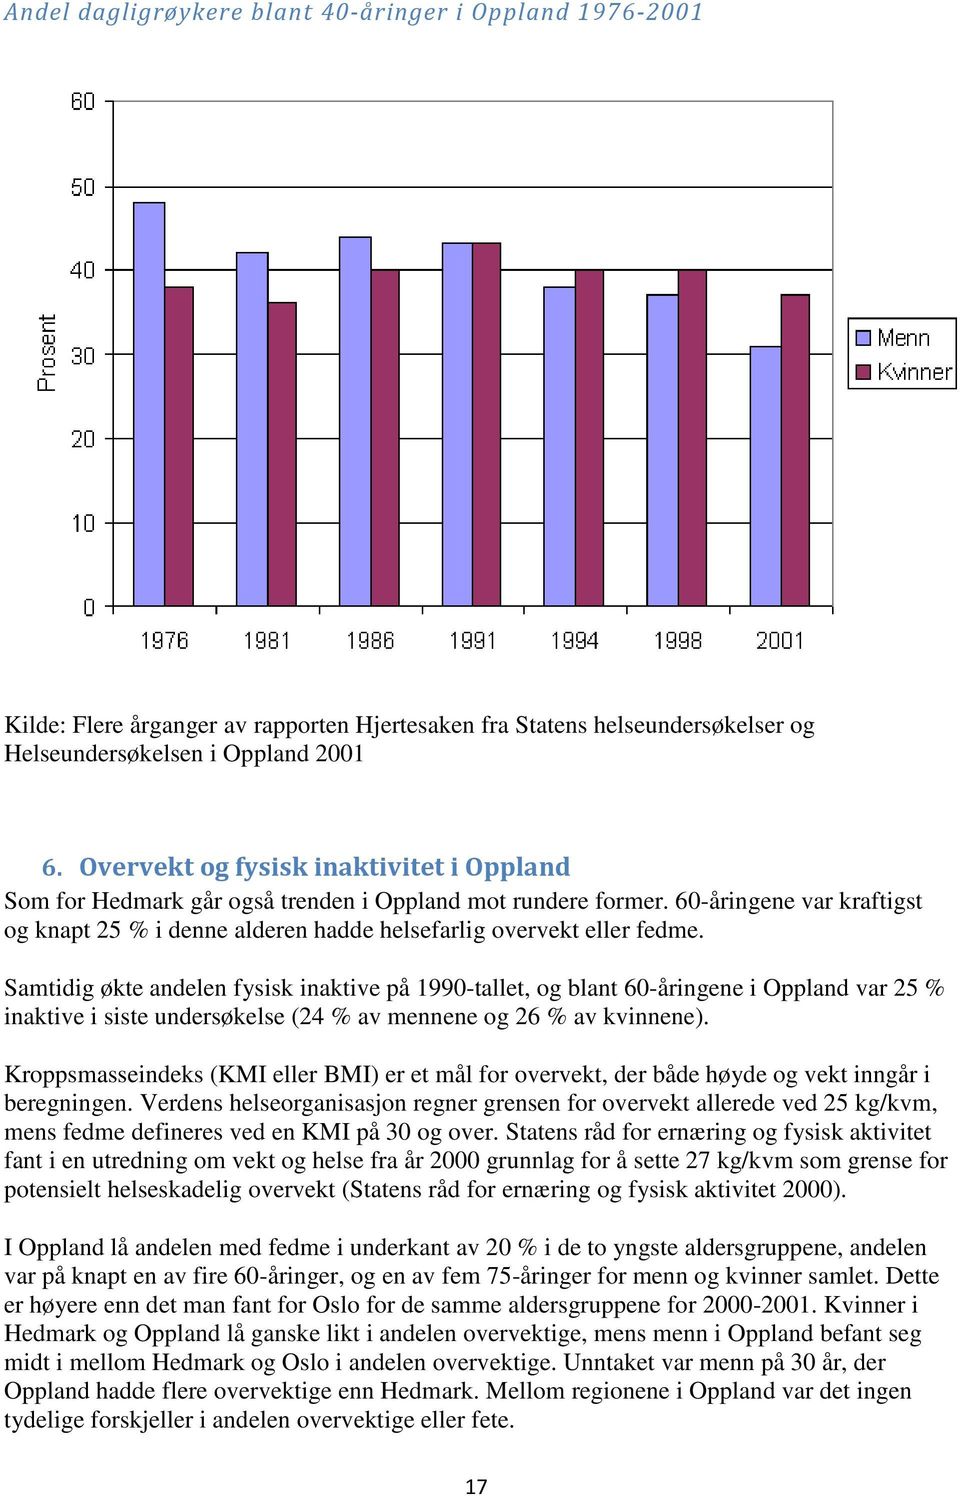 Samtidig økte andelen fysisk inaktive på 1990-tallet, og blant 60-åringene i Oppland var 25 % inaktive i siste undersøkelse (24 % av mennene og 26 % av kvinnene).